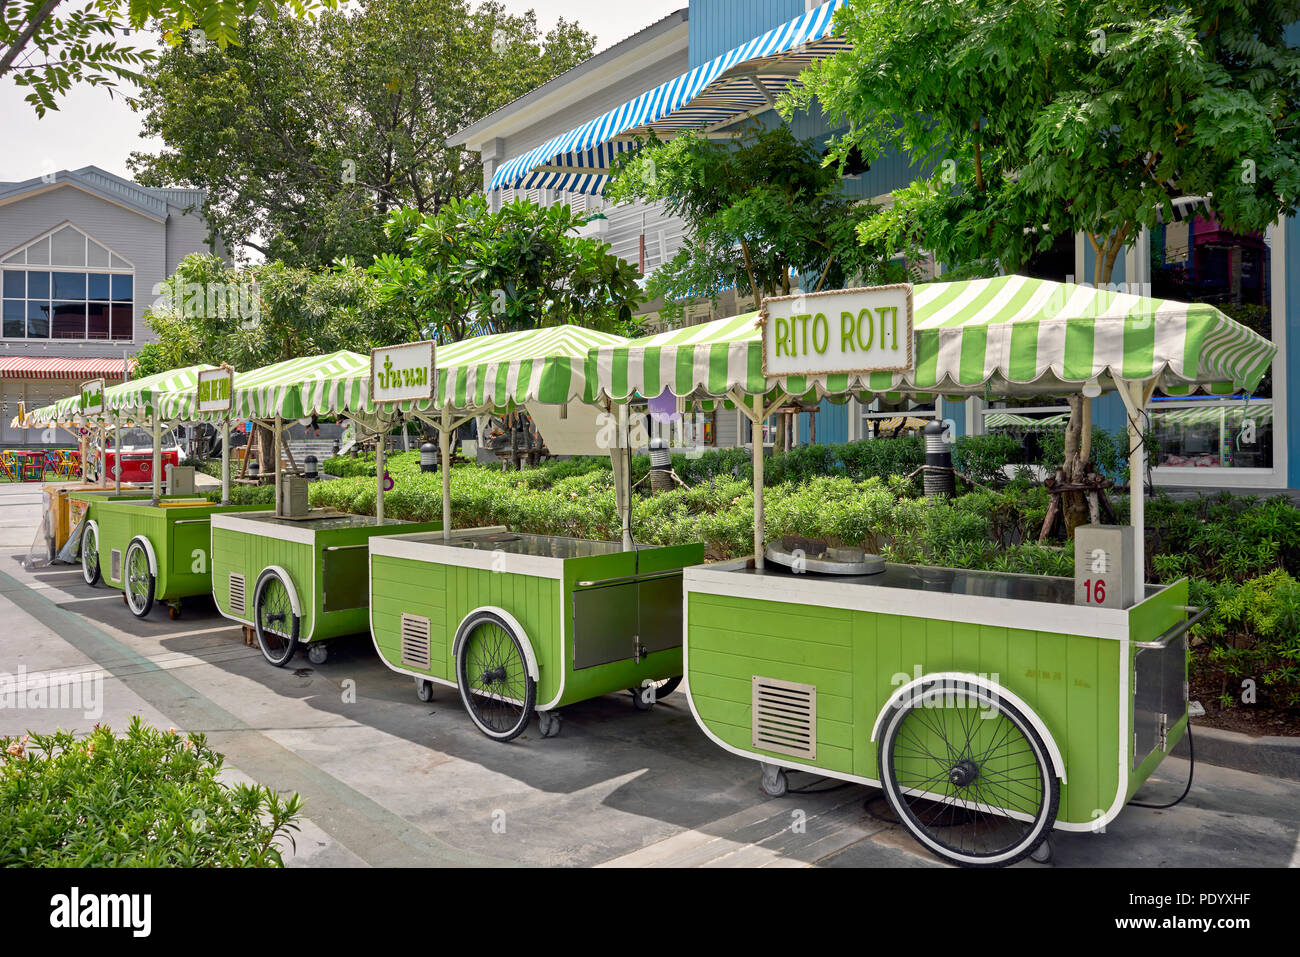 Des chariots de nourriture. Les avions de ligne de chariots mobiles dans un centre commercial de la Thaïlande avant-cour. L'Asie du sud-est Banque D'Images